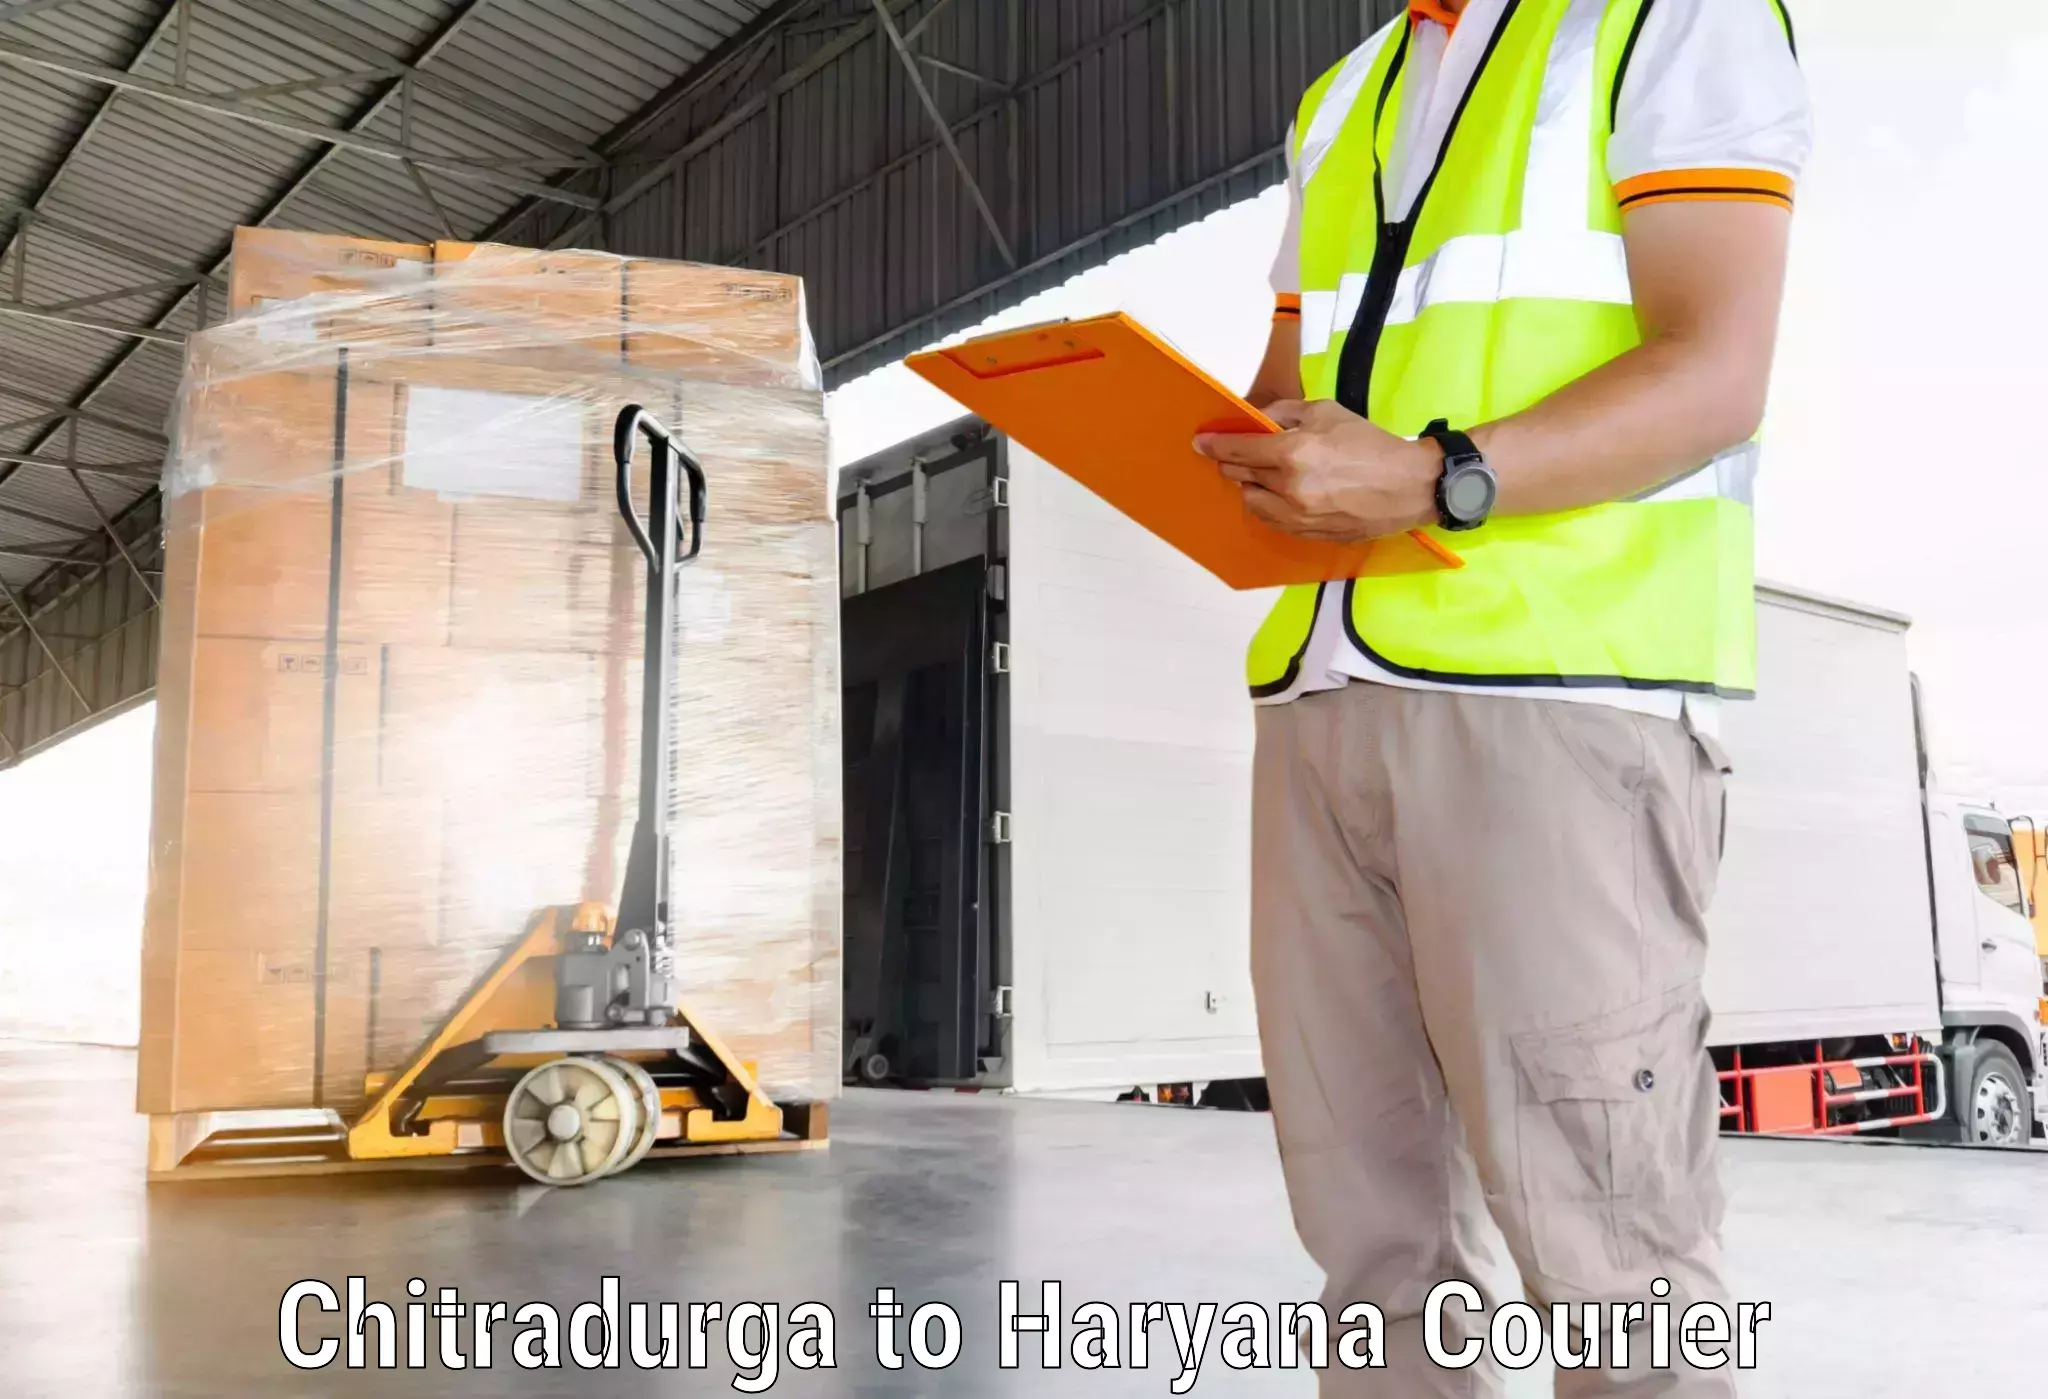 Express package transport Chitradurga to Chaudhary Charan Singh Haryana Agricultural University Hisar